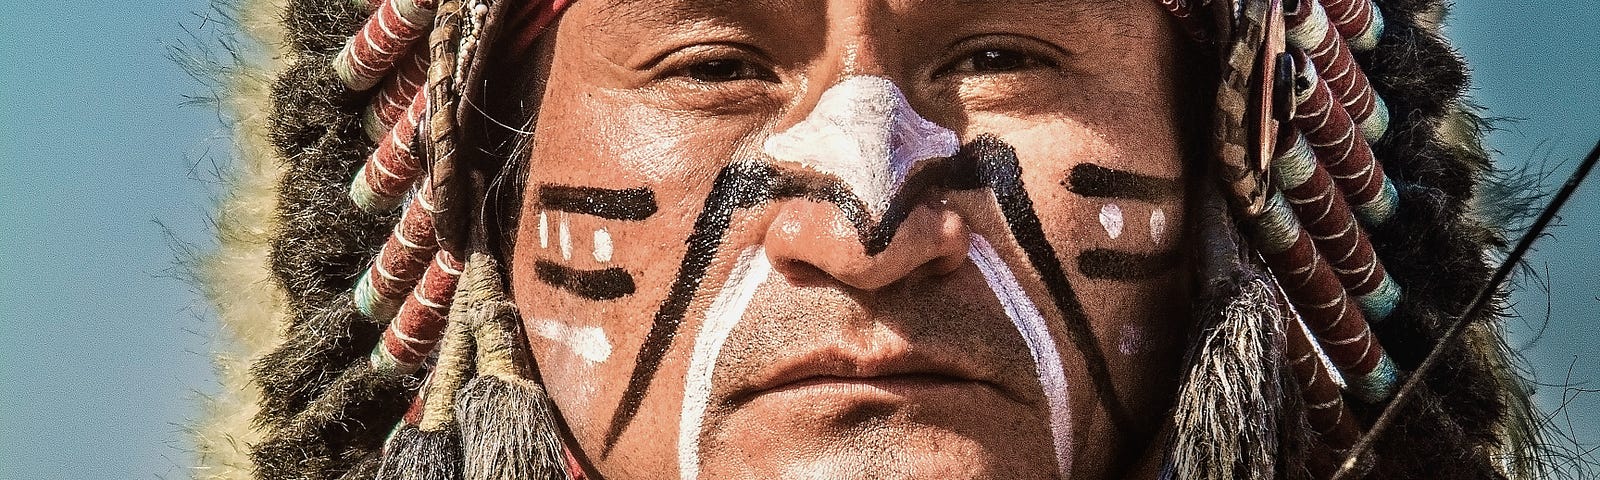 Кожа индейца. Апачи (народность). Боевой раскрас индейцев Северной Америки. Боевой раскрас индейцев Апачи.